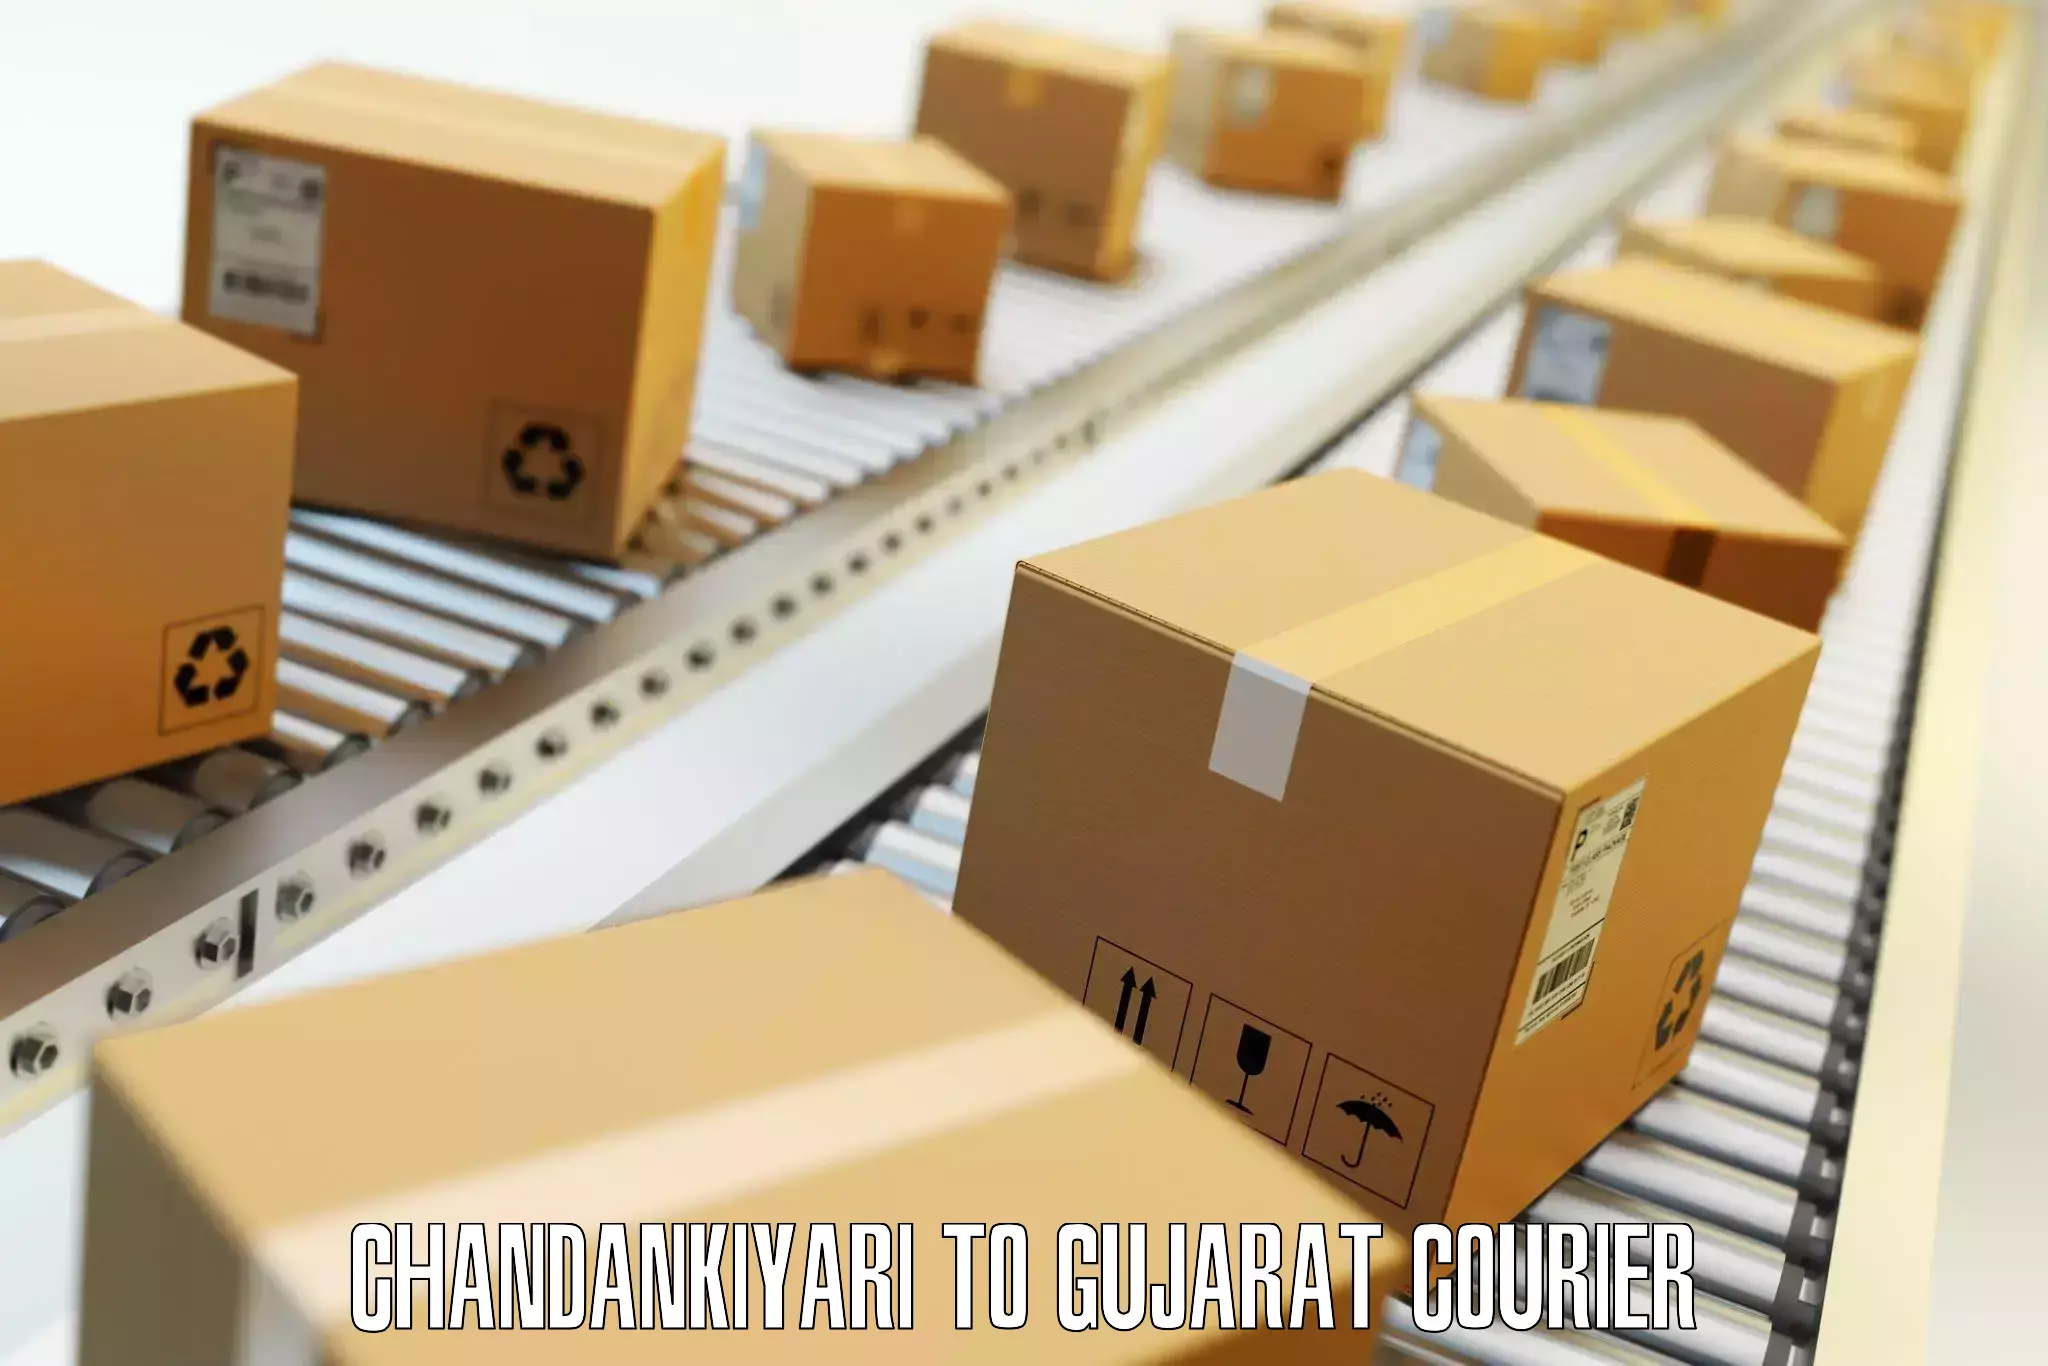 Baggage transport coordination in Chandankiyari to Gujarat